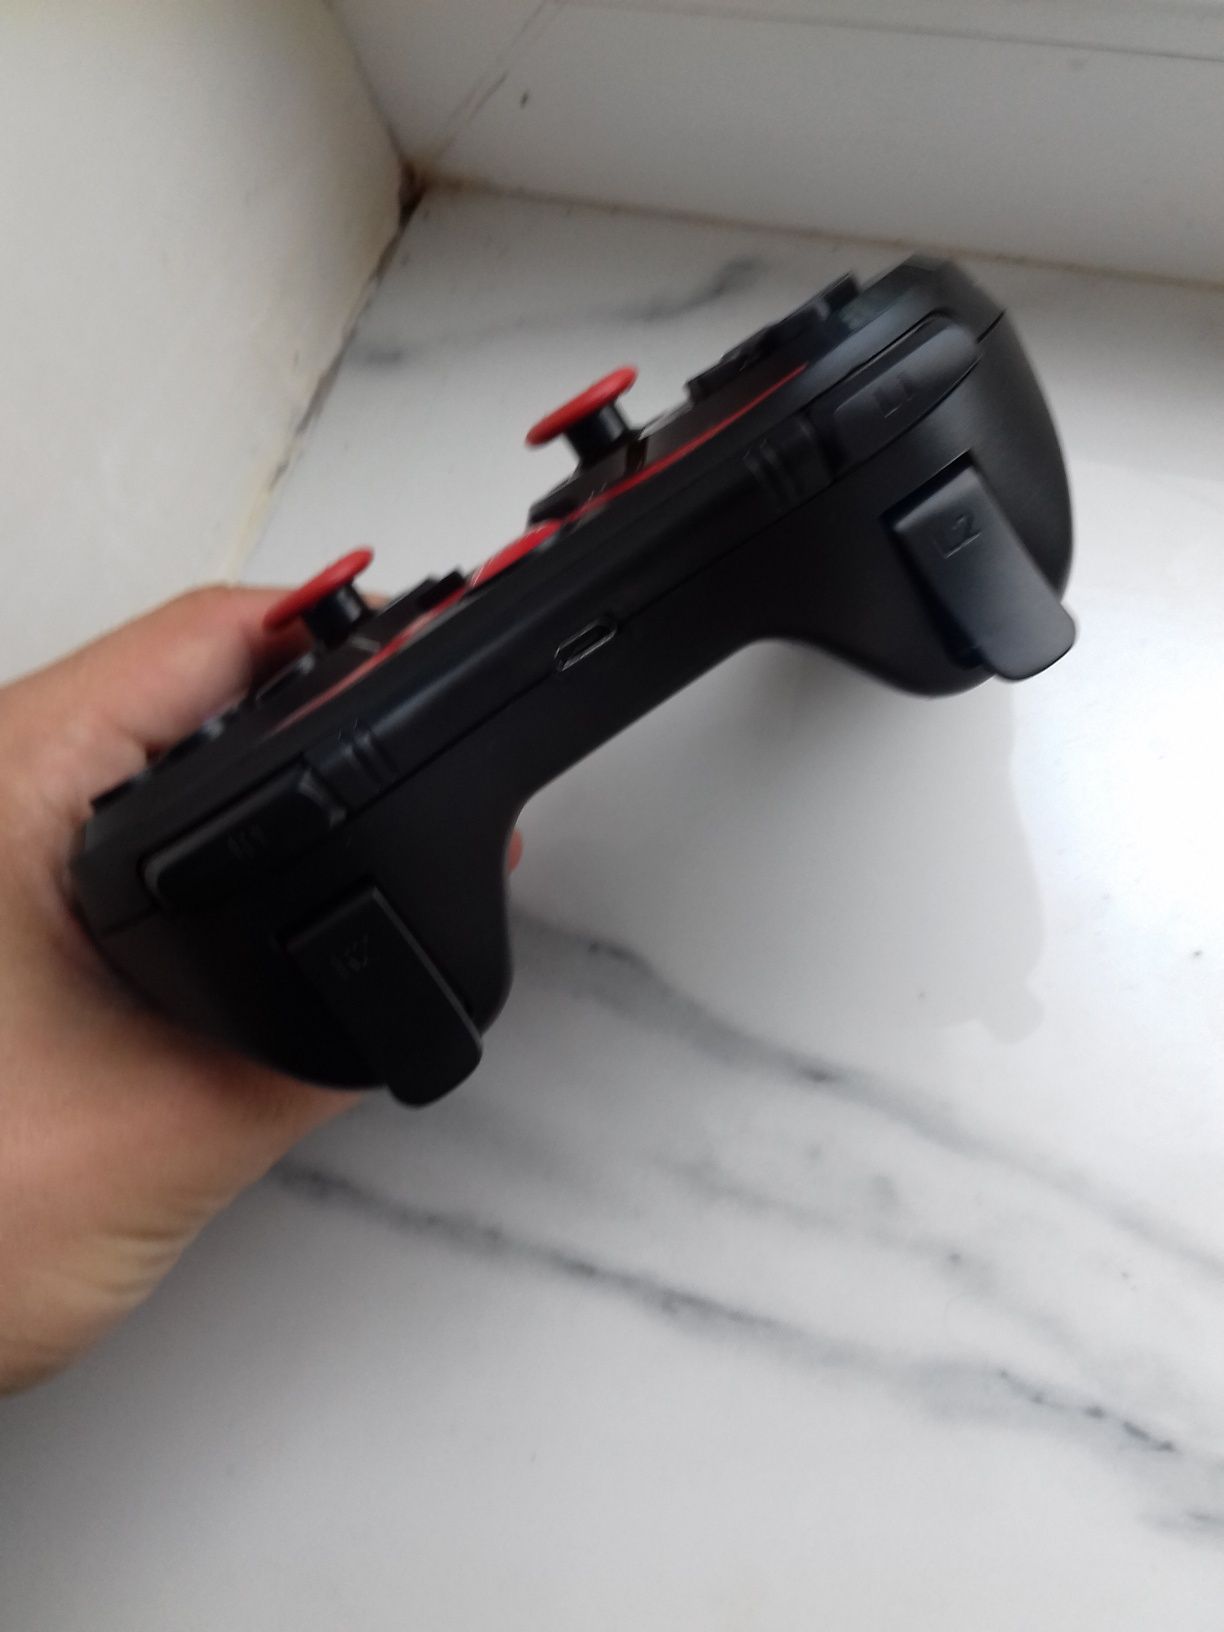 Джойстик TERIOS X3, геймпад беспроводной для телефона, игровой контрол